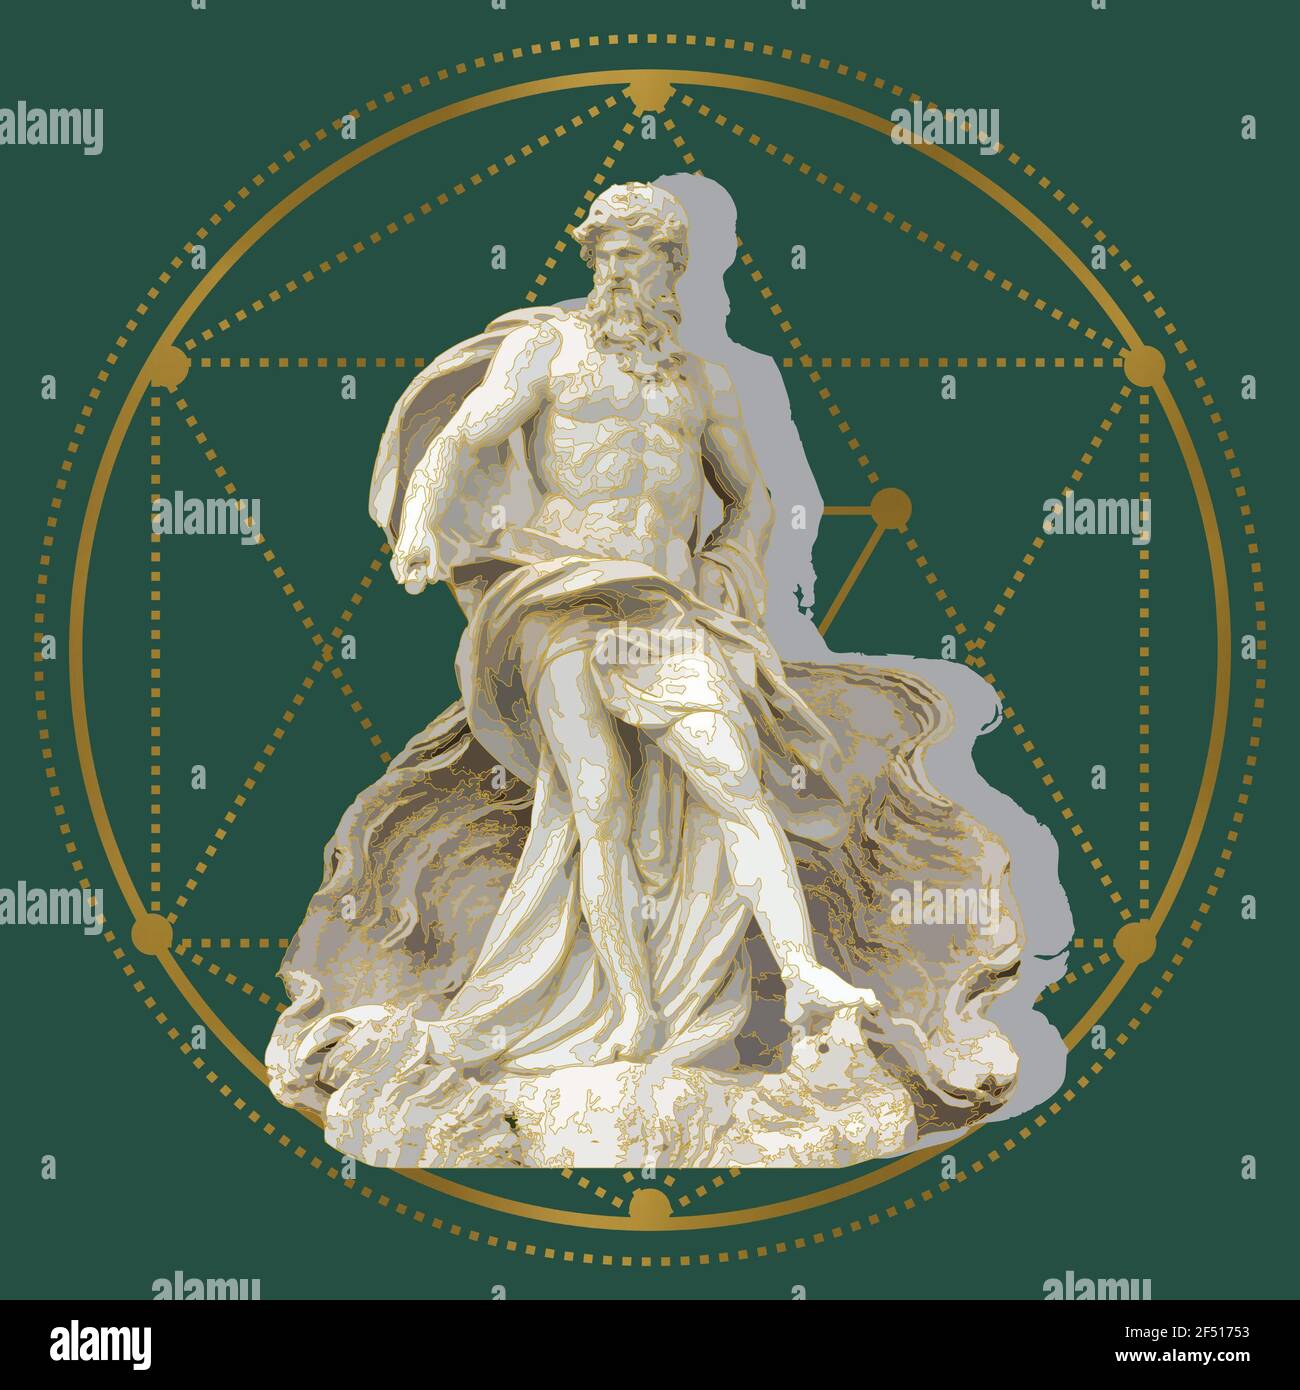 Rendu 3D de la statue de Zeus contre un vert arrière-plan avec des formes géométriques dessus Banque D'Images